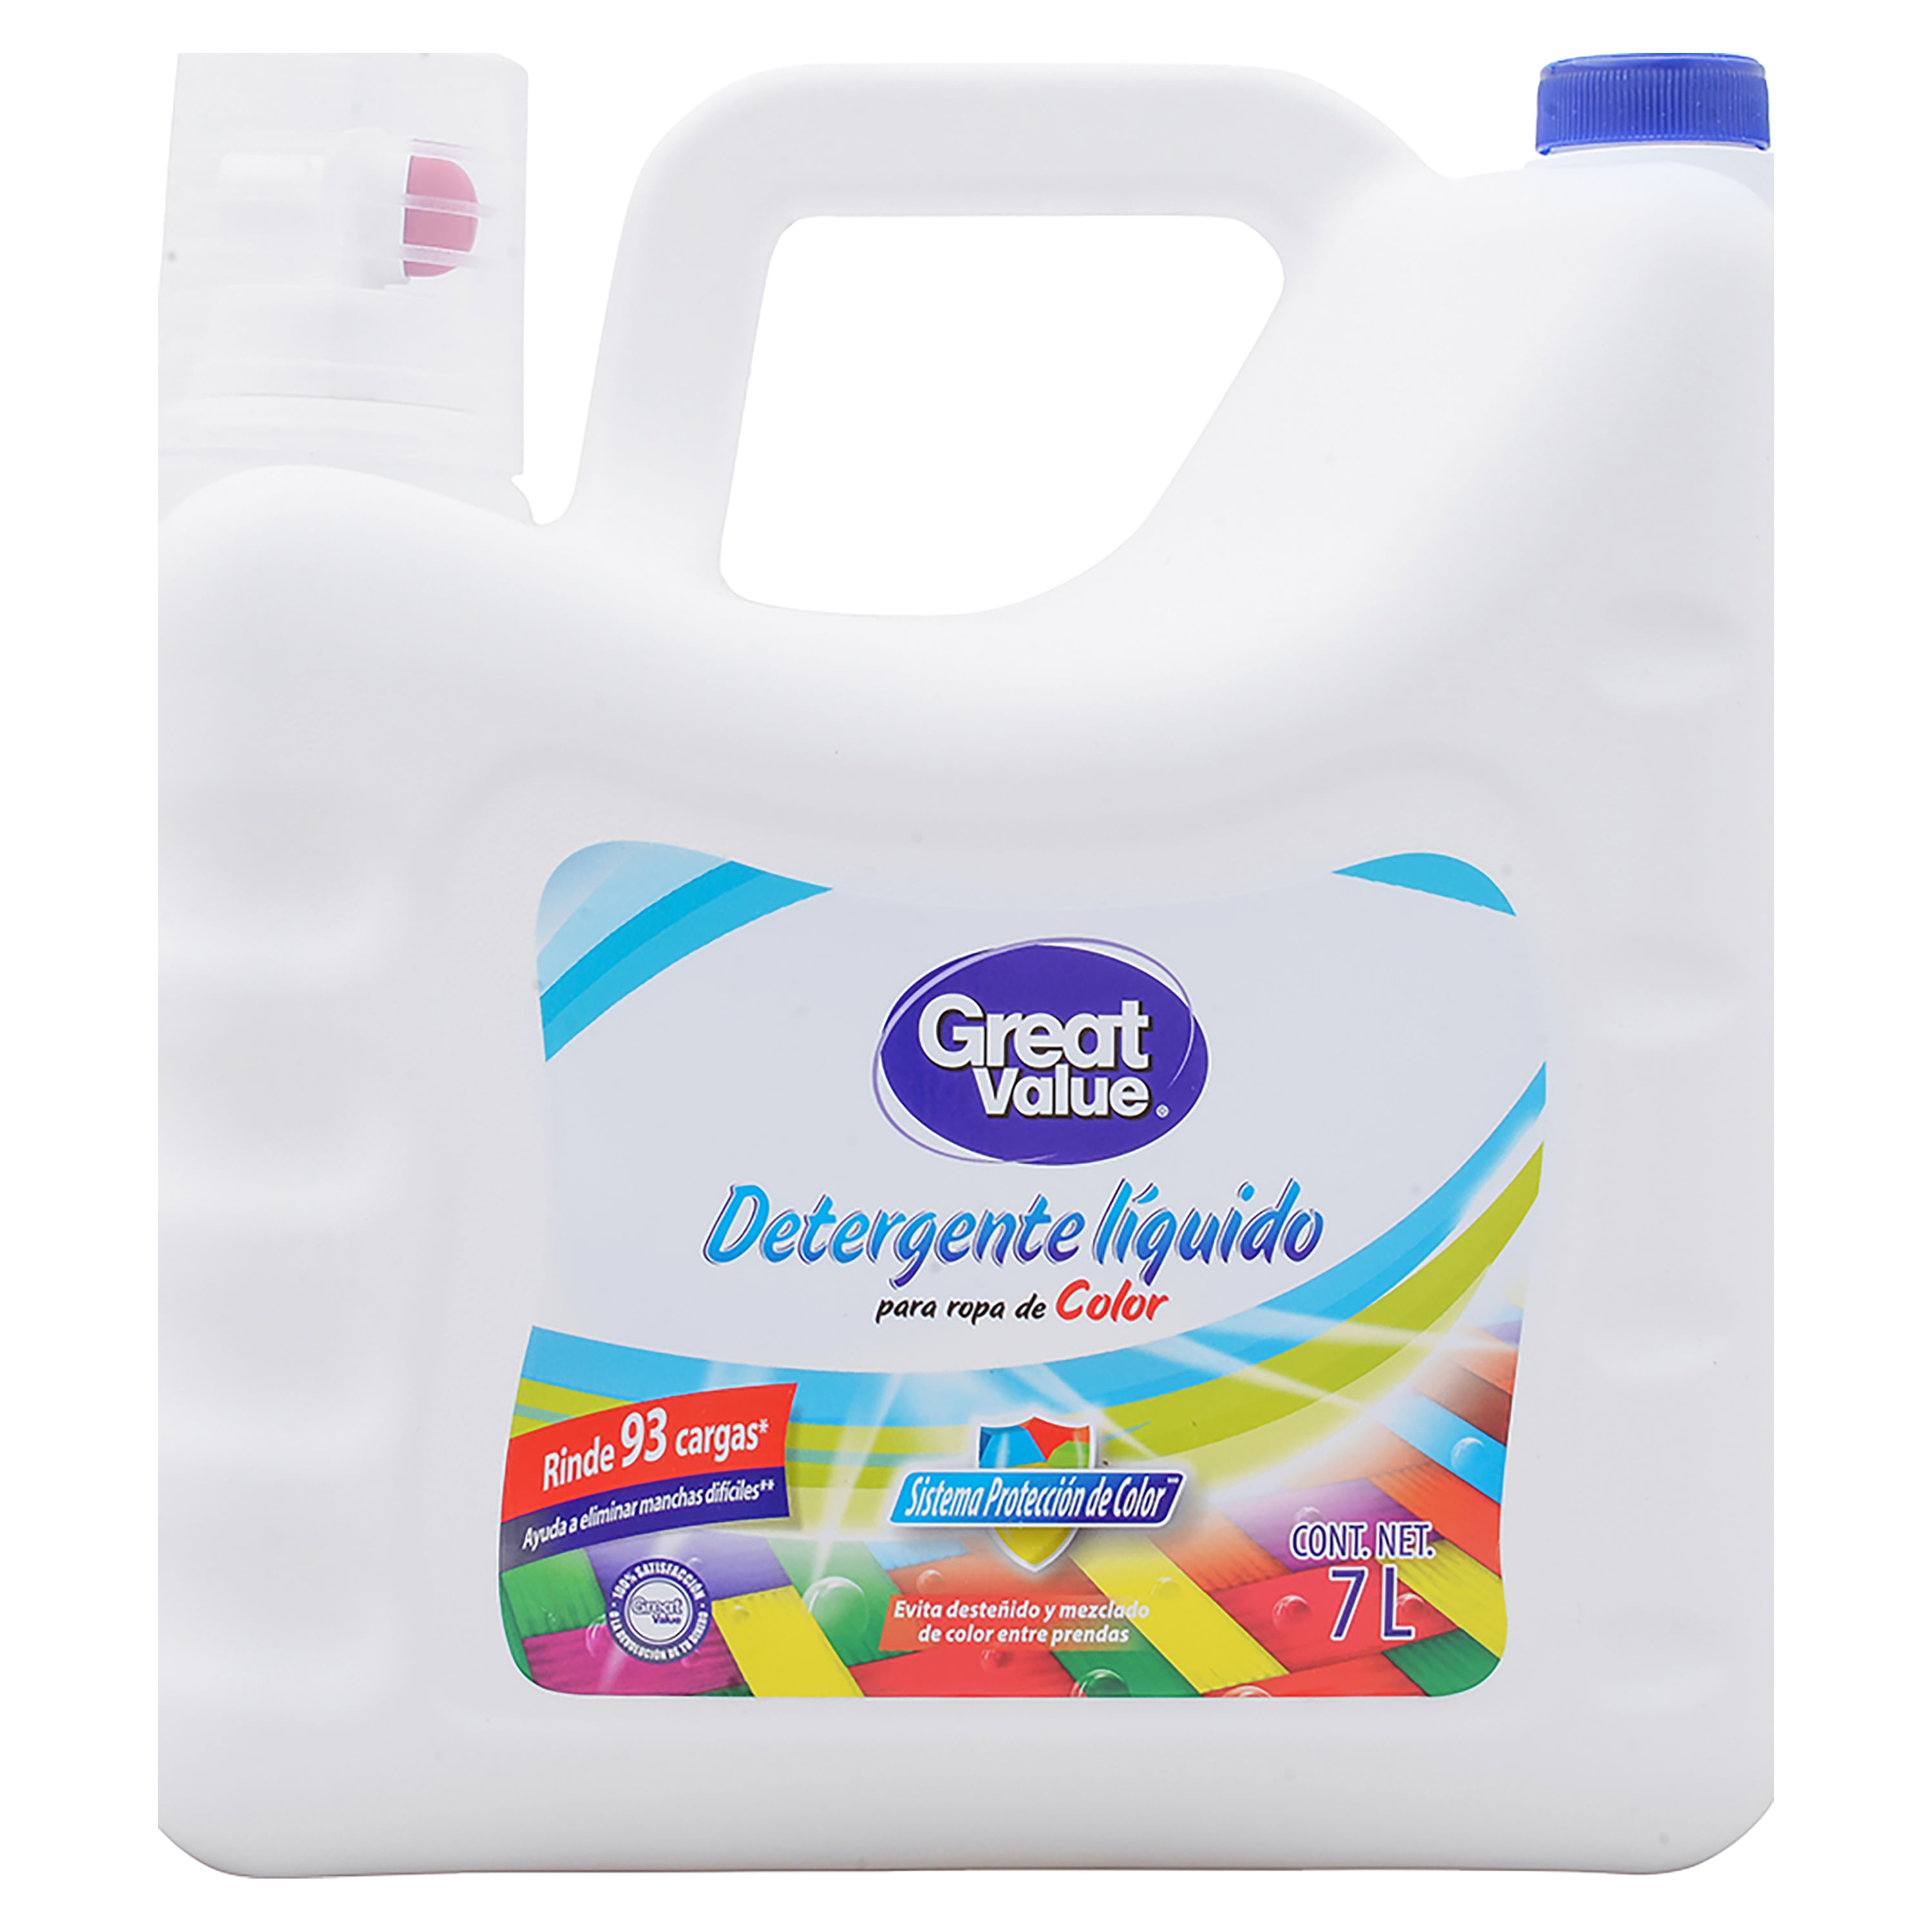 Detergente-Liquido-Great-Value-7000ml-1-35019